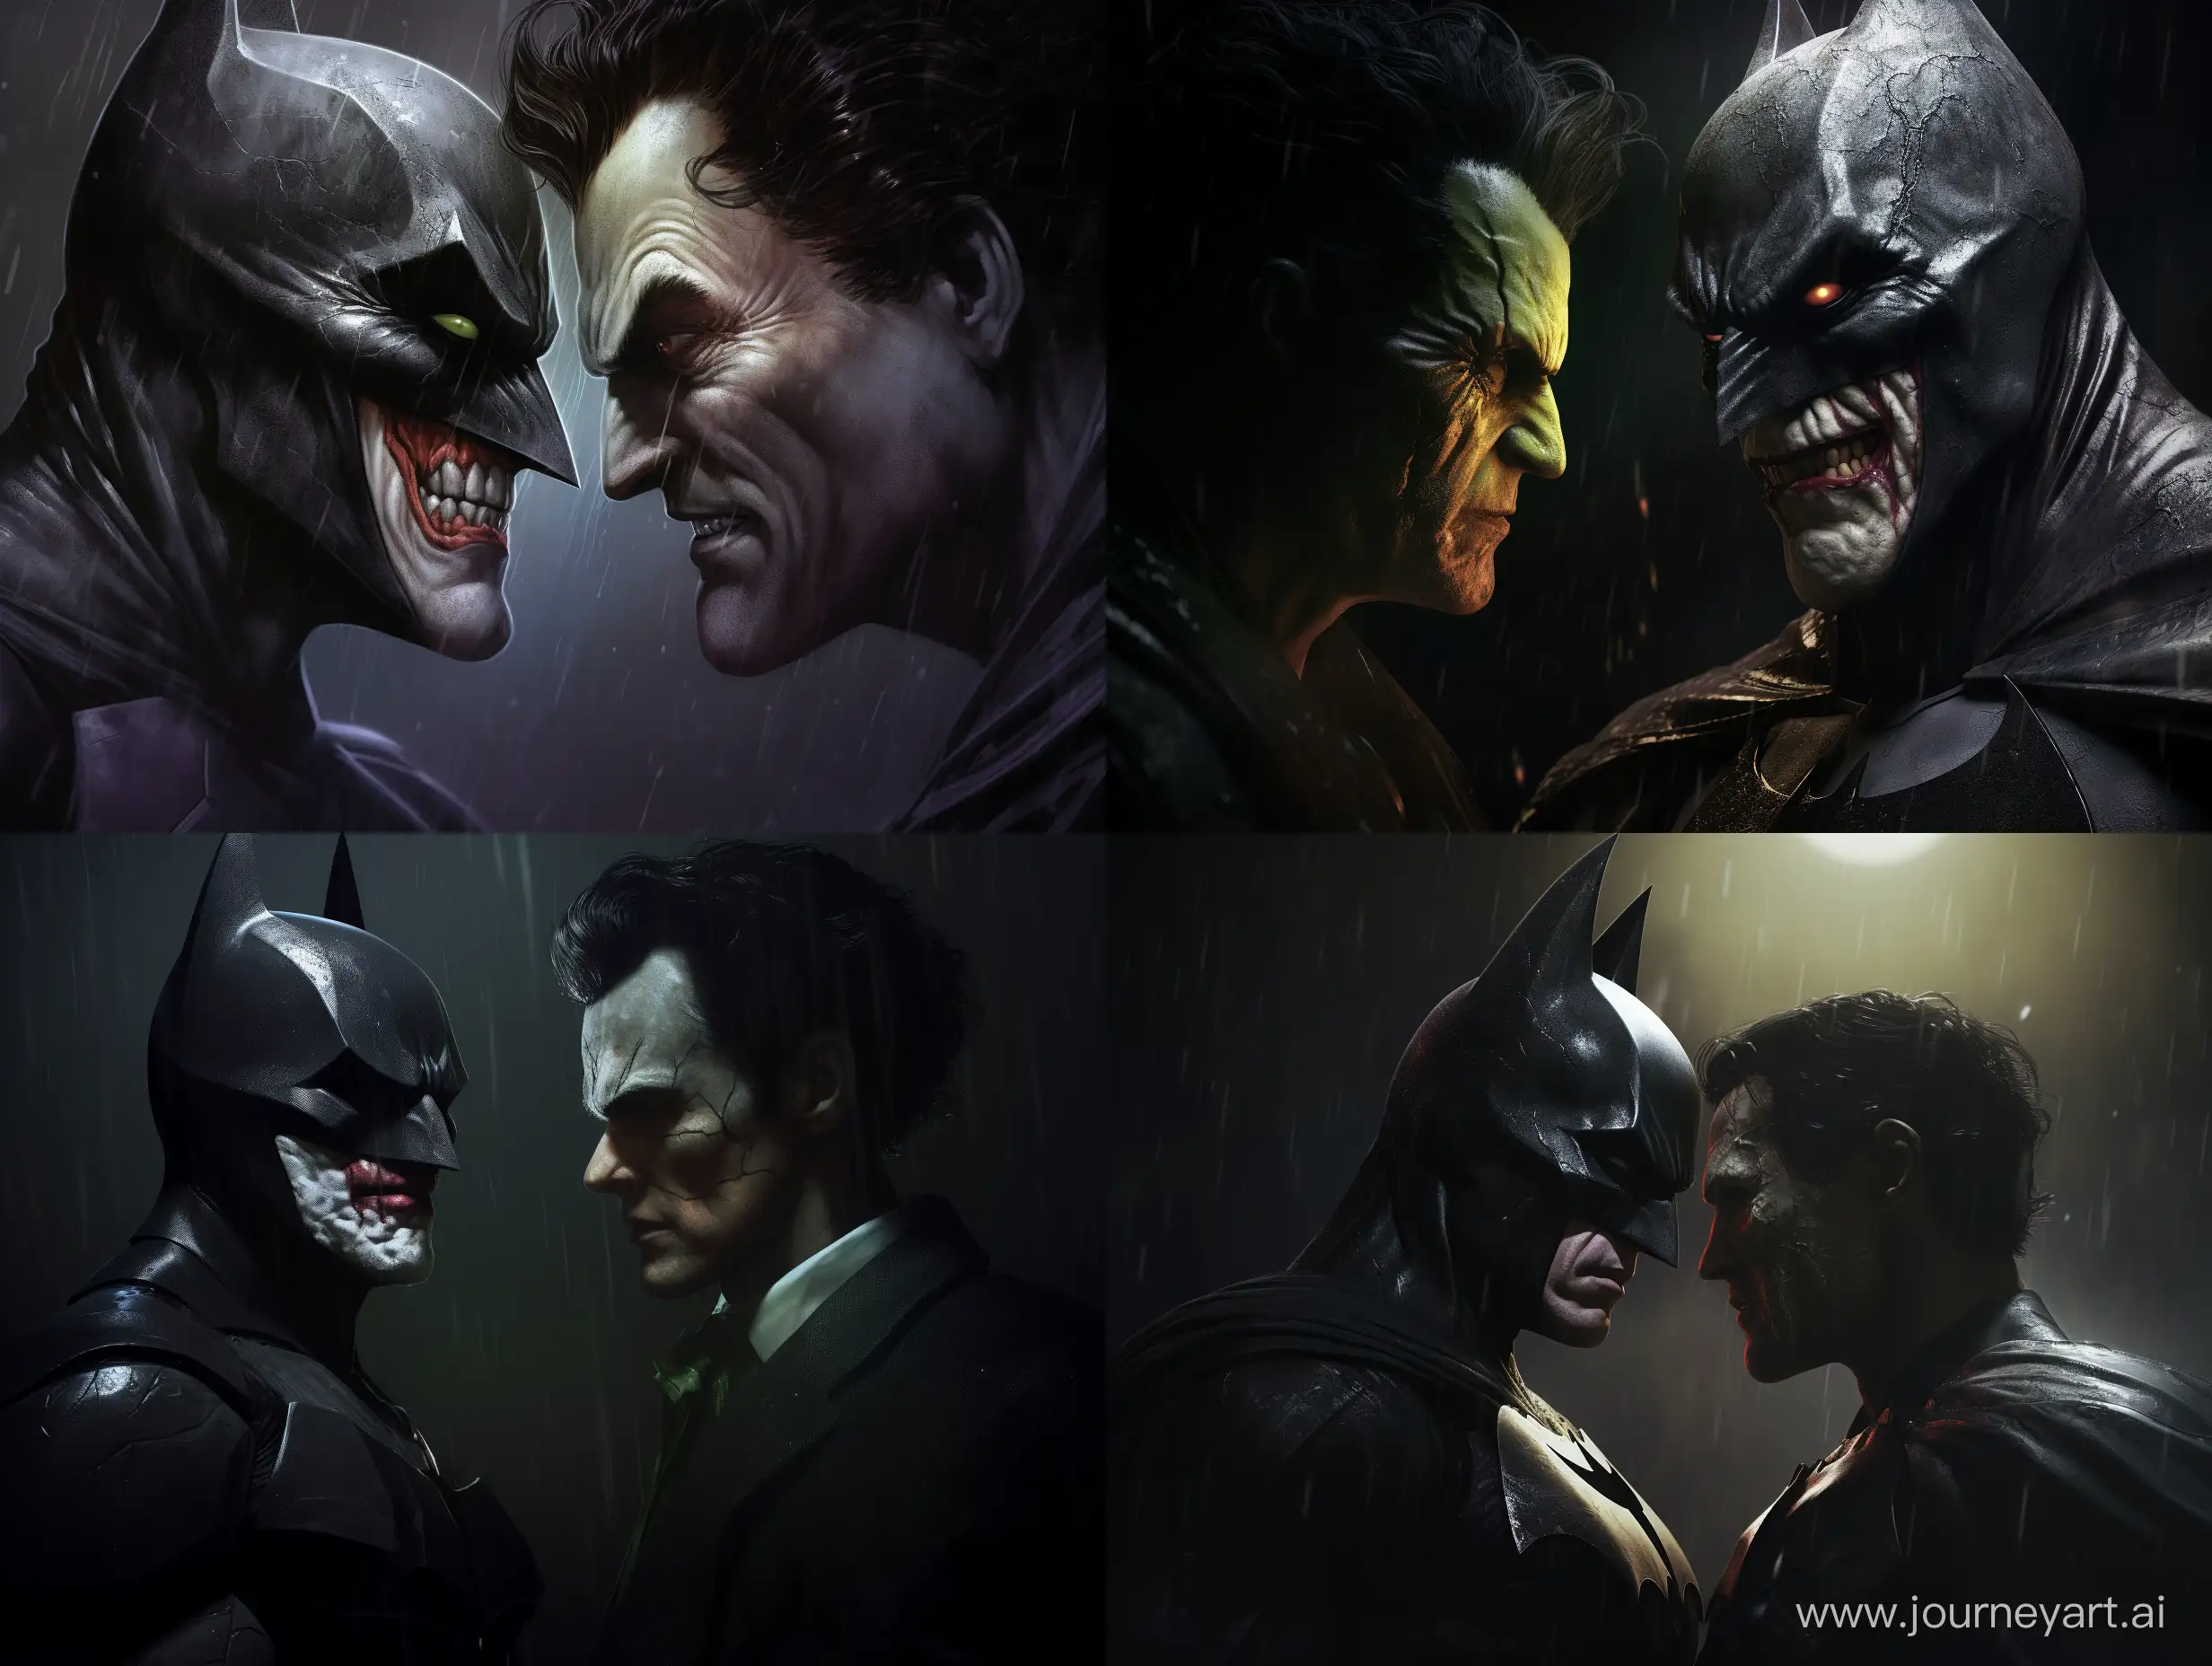 Batman et le joker en gros plan, face a face. Dans une décor sombre de l'univers DC comics